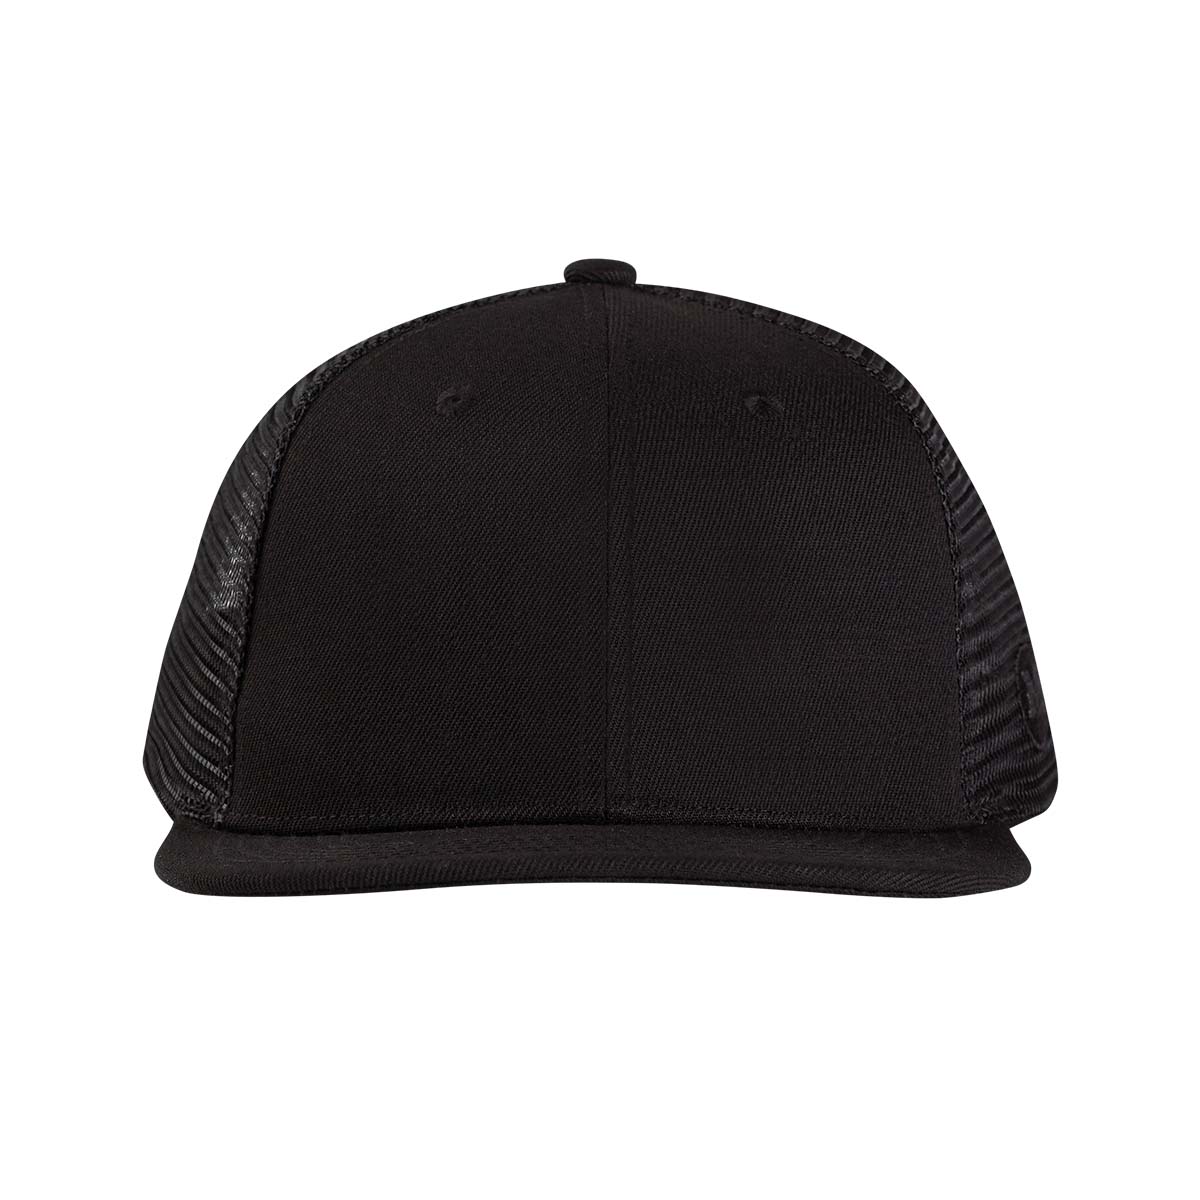 The Blank Trucker XXL Hat in Black. Get it now! - Mammoth Headwear